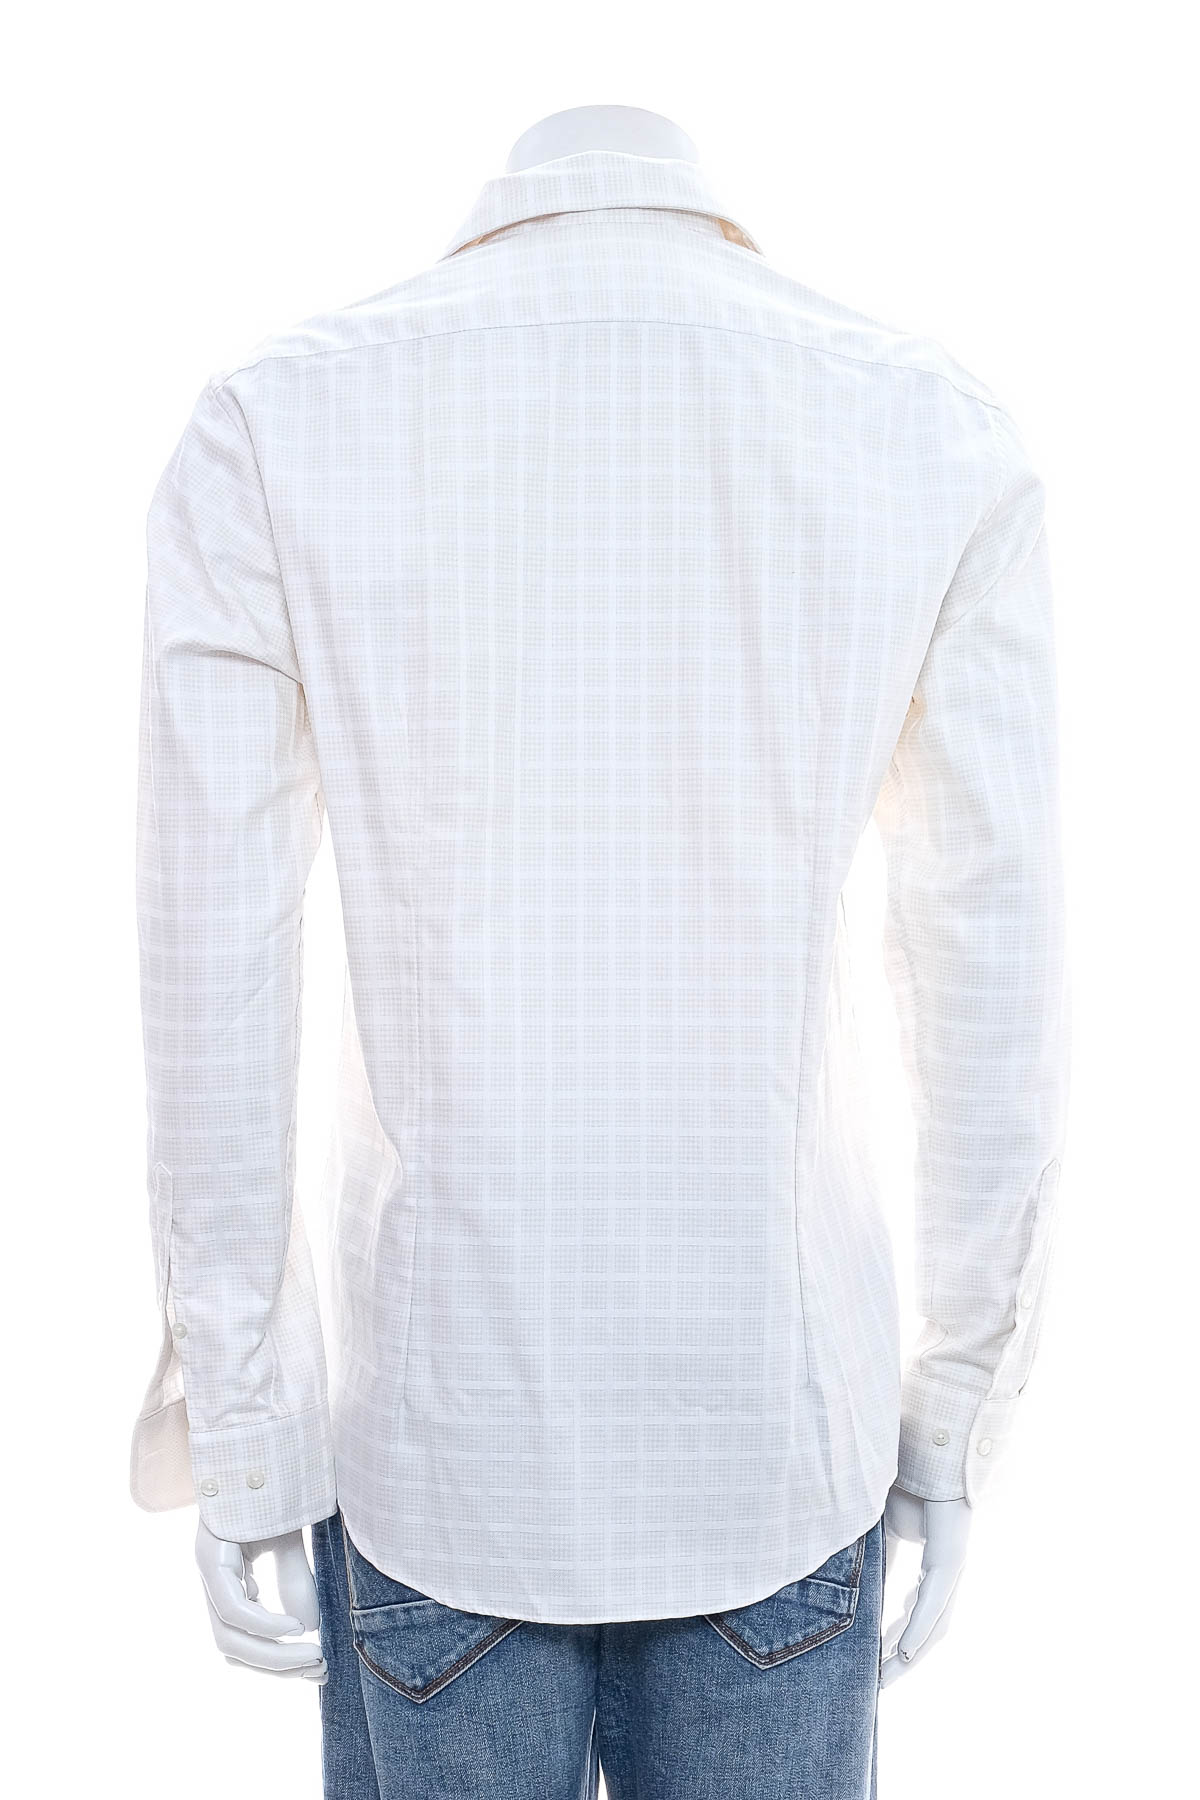 Ανδρικό πουκάμισο - Jacques Britt - 1